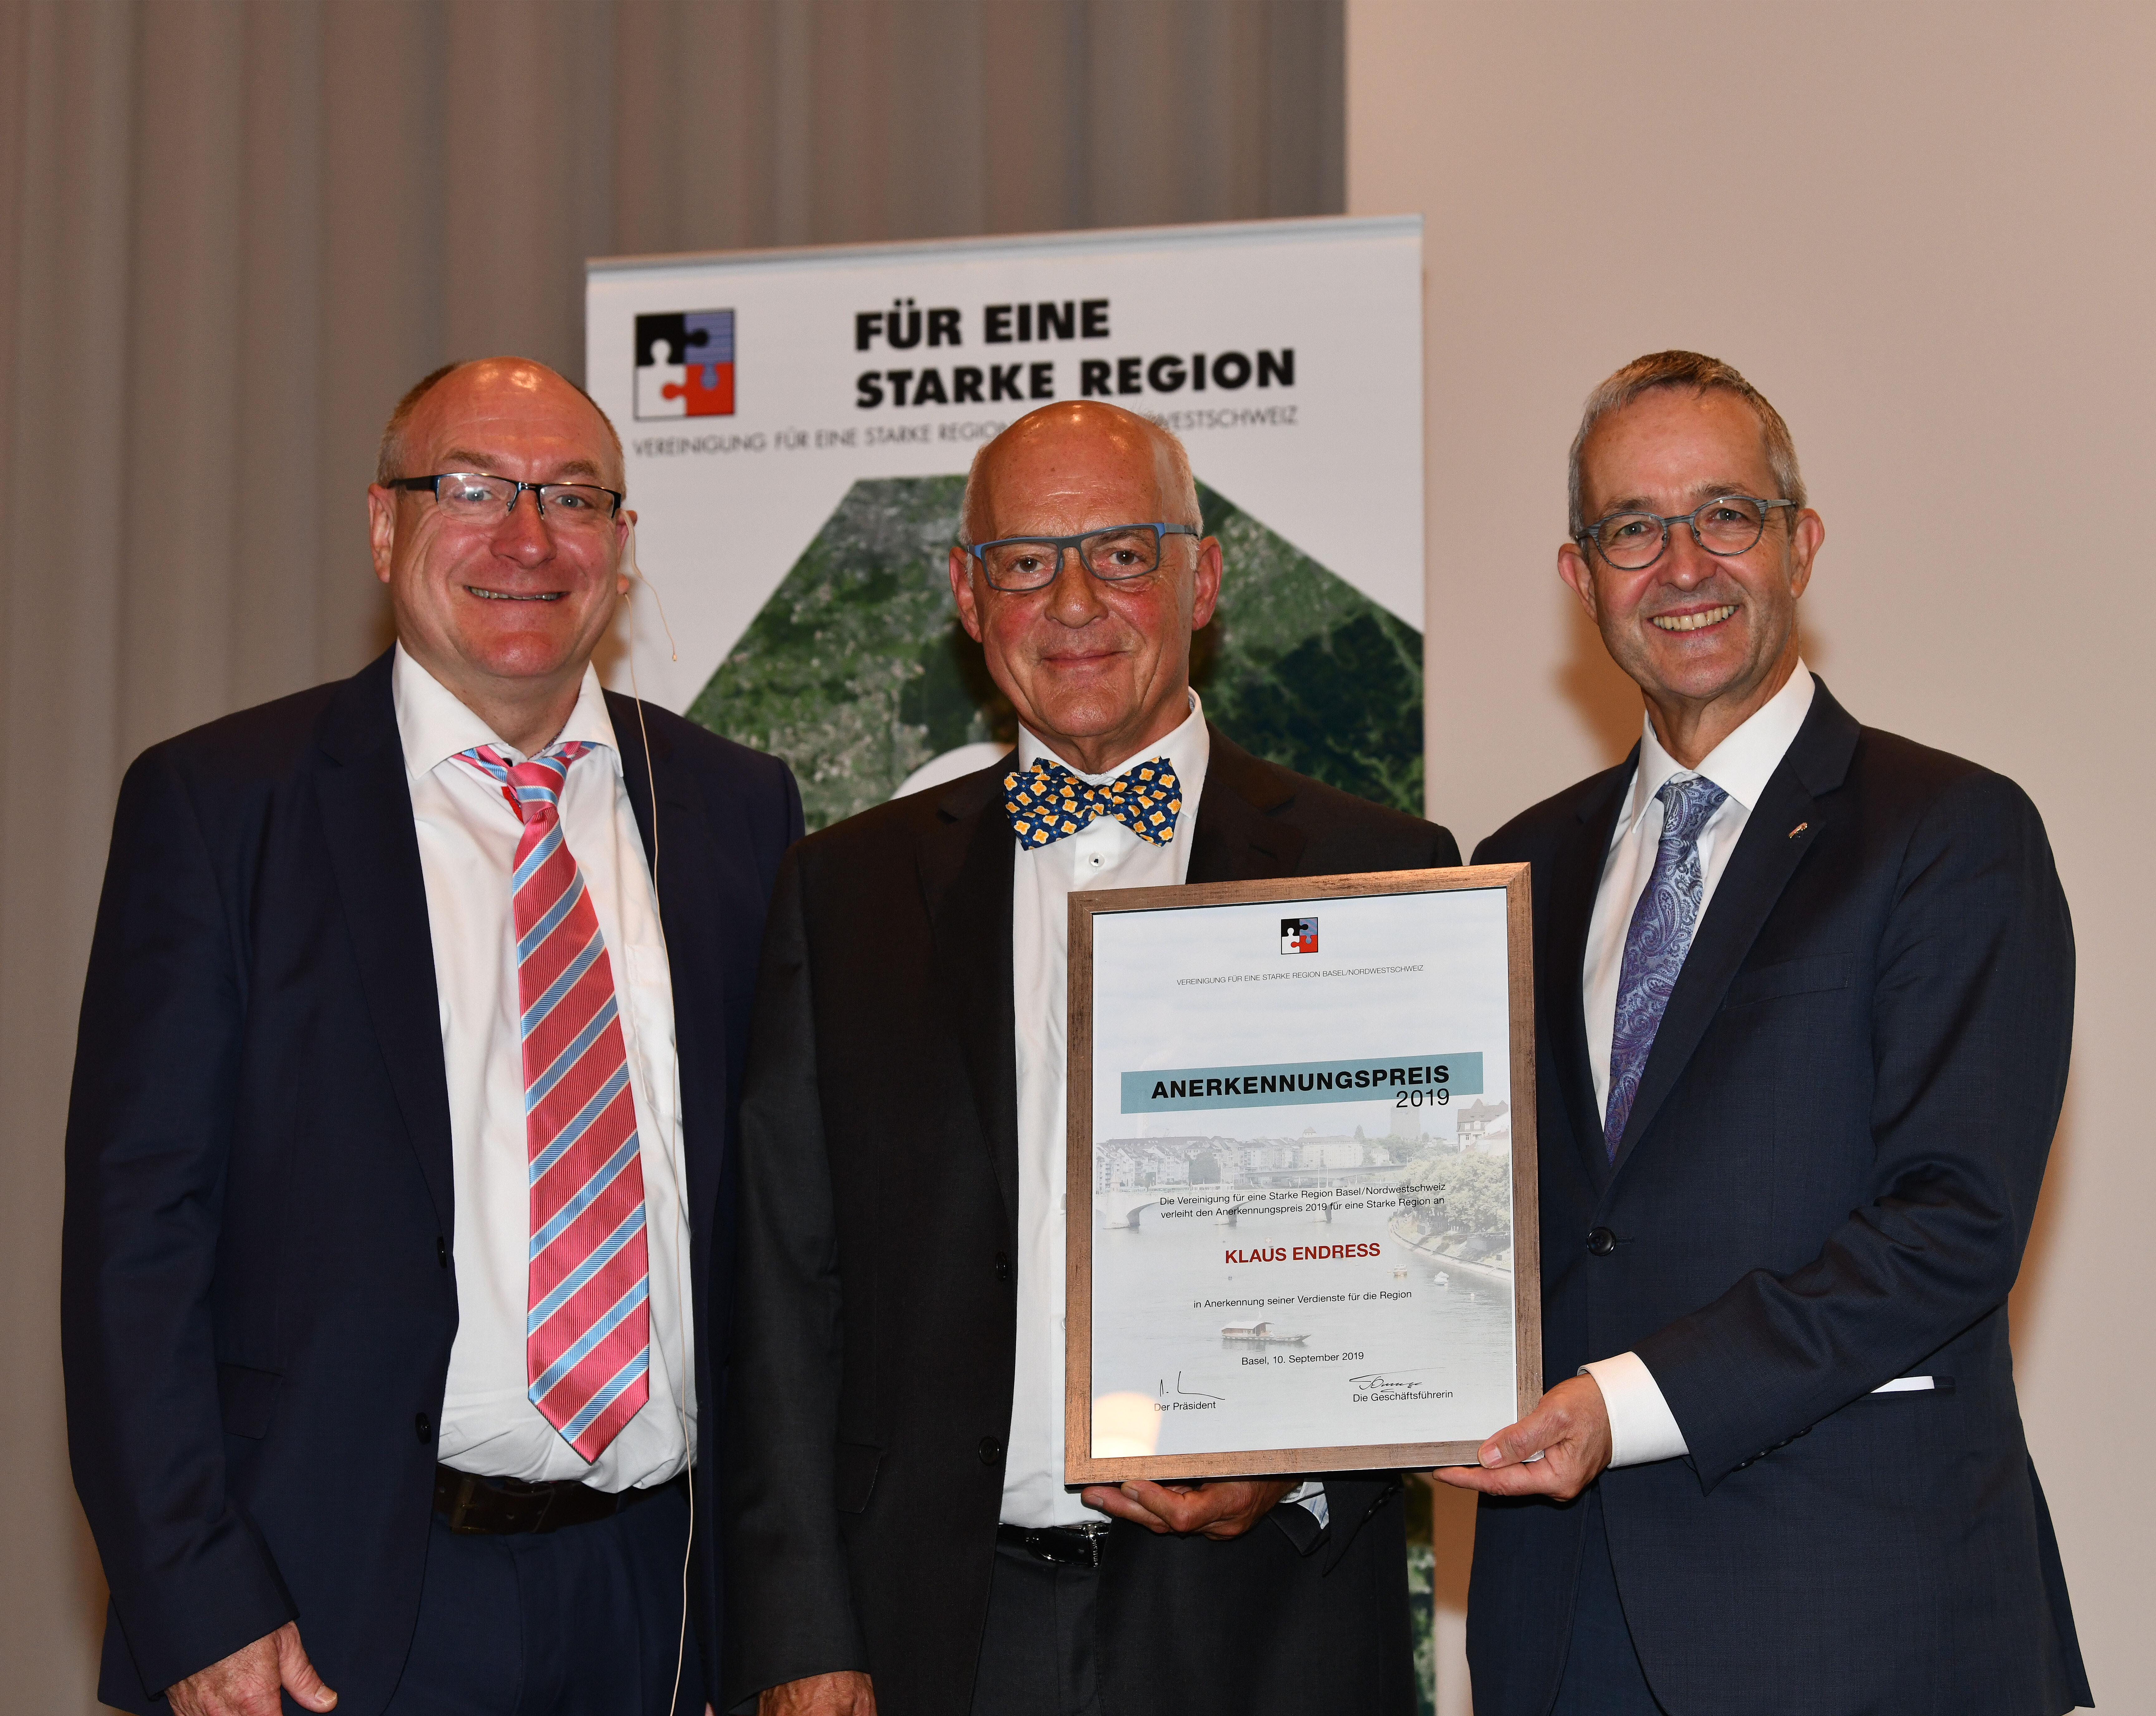 Anerkennungspreis für eine Starke Region 2019 an Klaus Endress